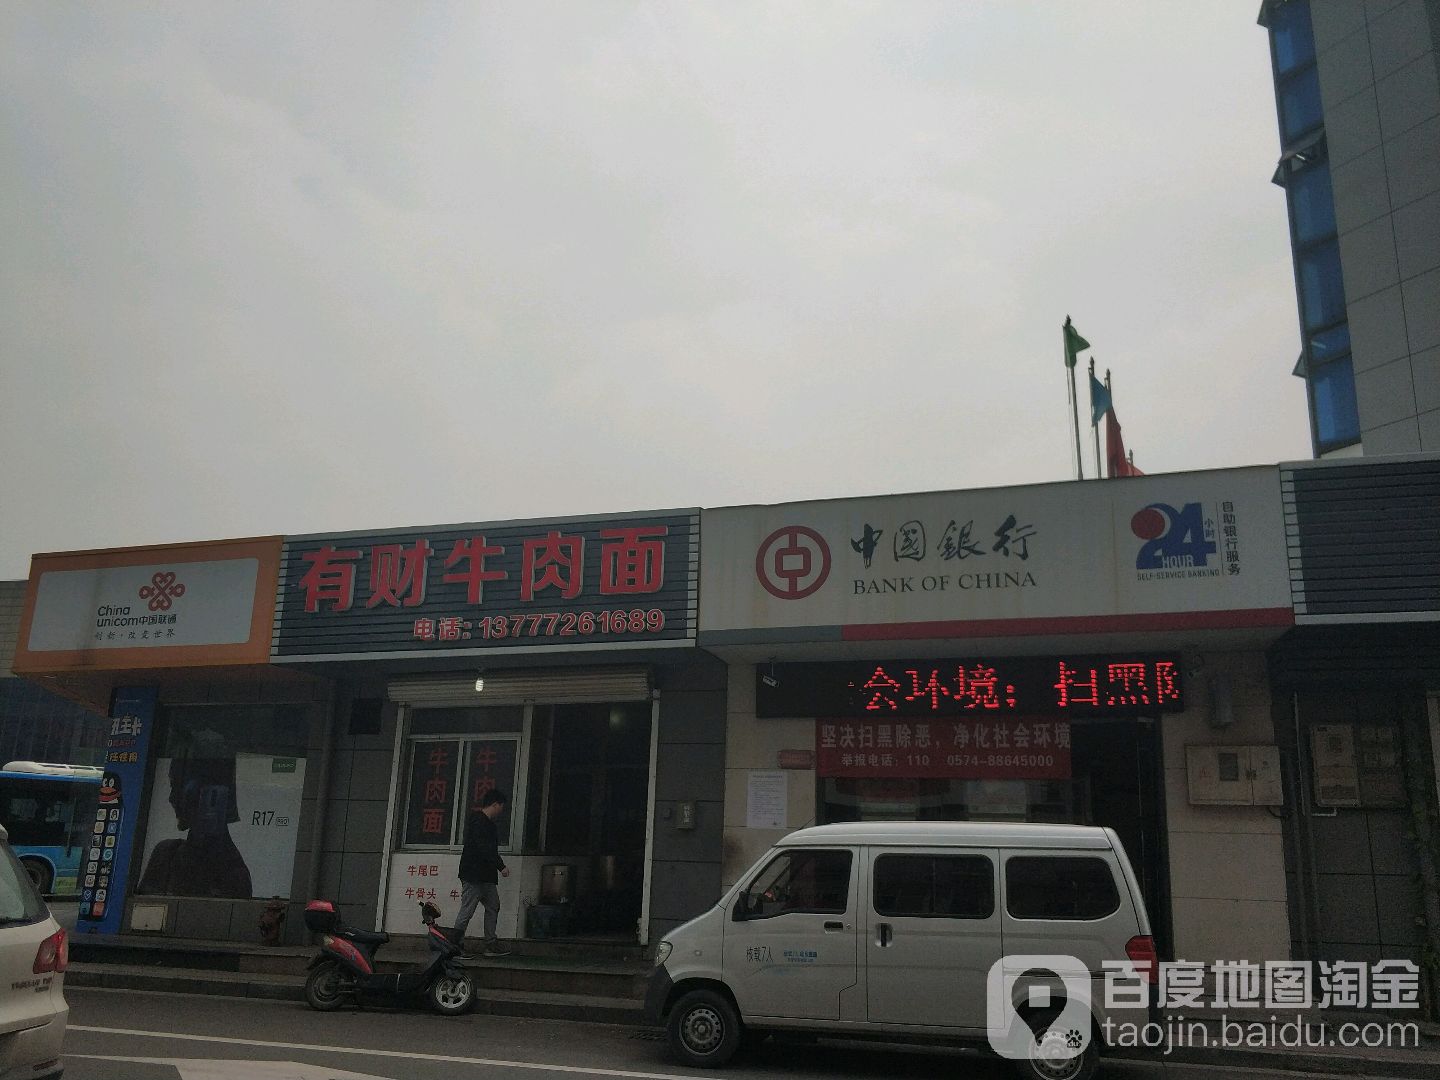 中國銀行24小時自助銀行(新浦路)